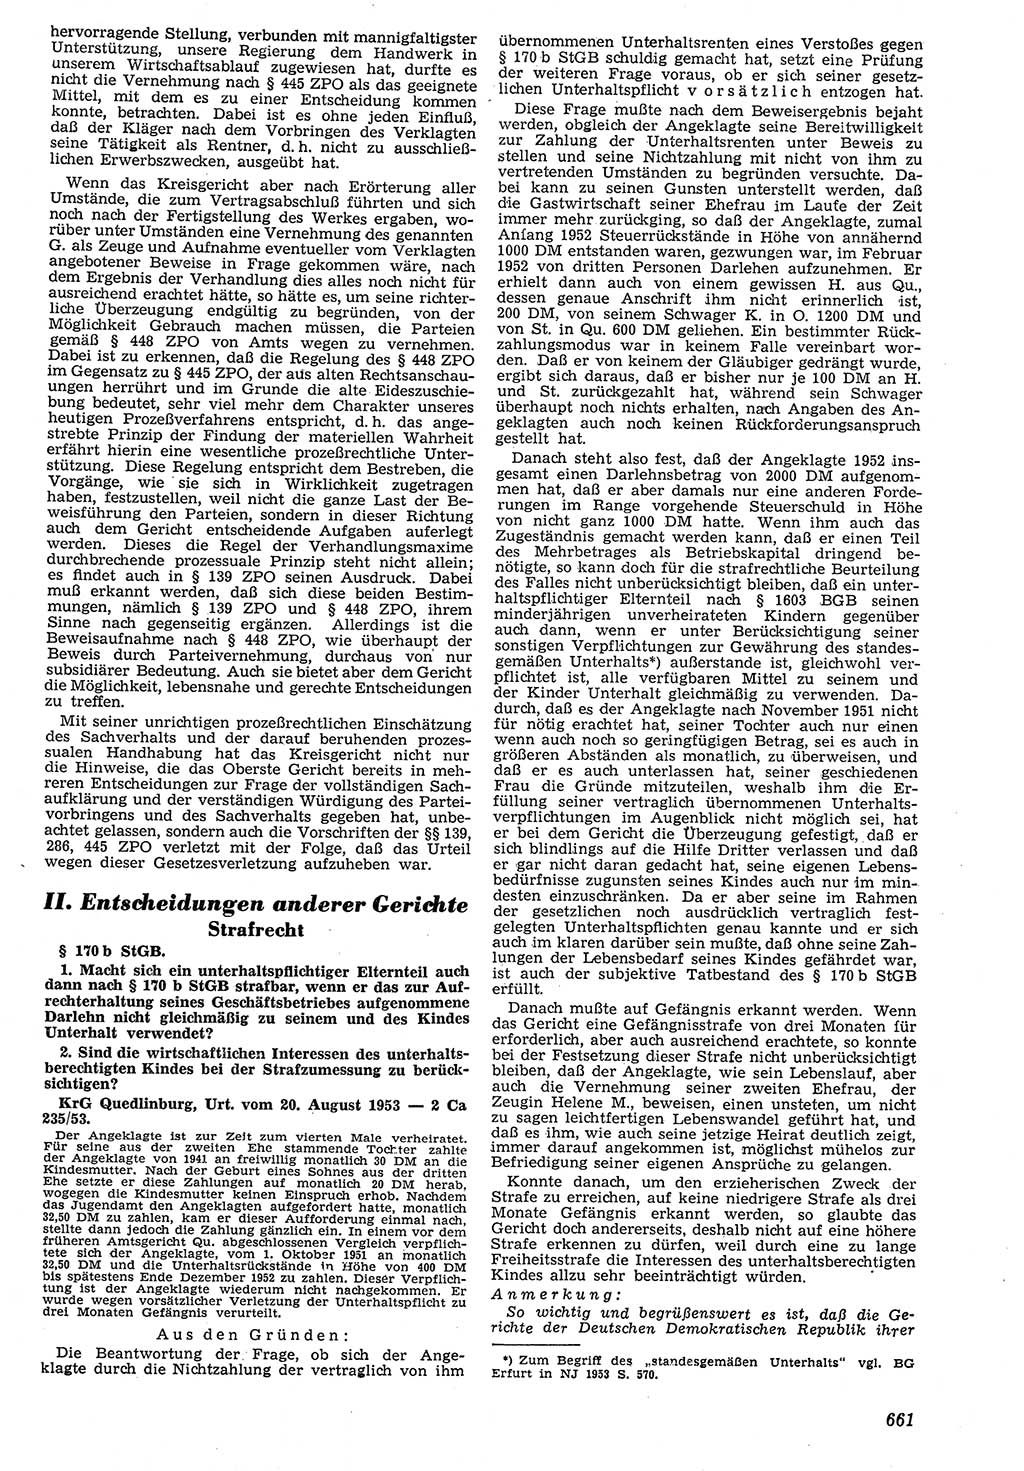 Neue Justiz (NJ), Zeitschrift für Recht und Rechtswissenschaft [Deutsche Demokratische Republik (DDR)], 7. Jahrgang 1953, Seite 661 (NJ DDR 1953, S. 661)